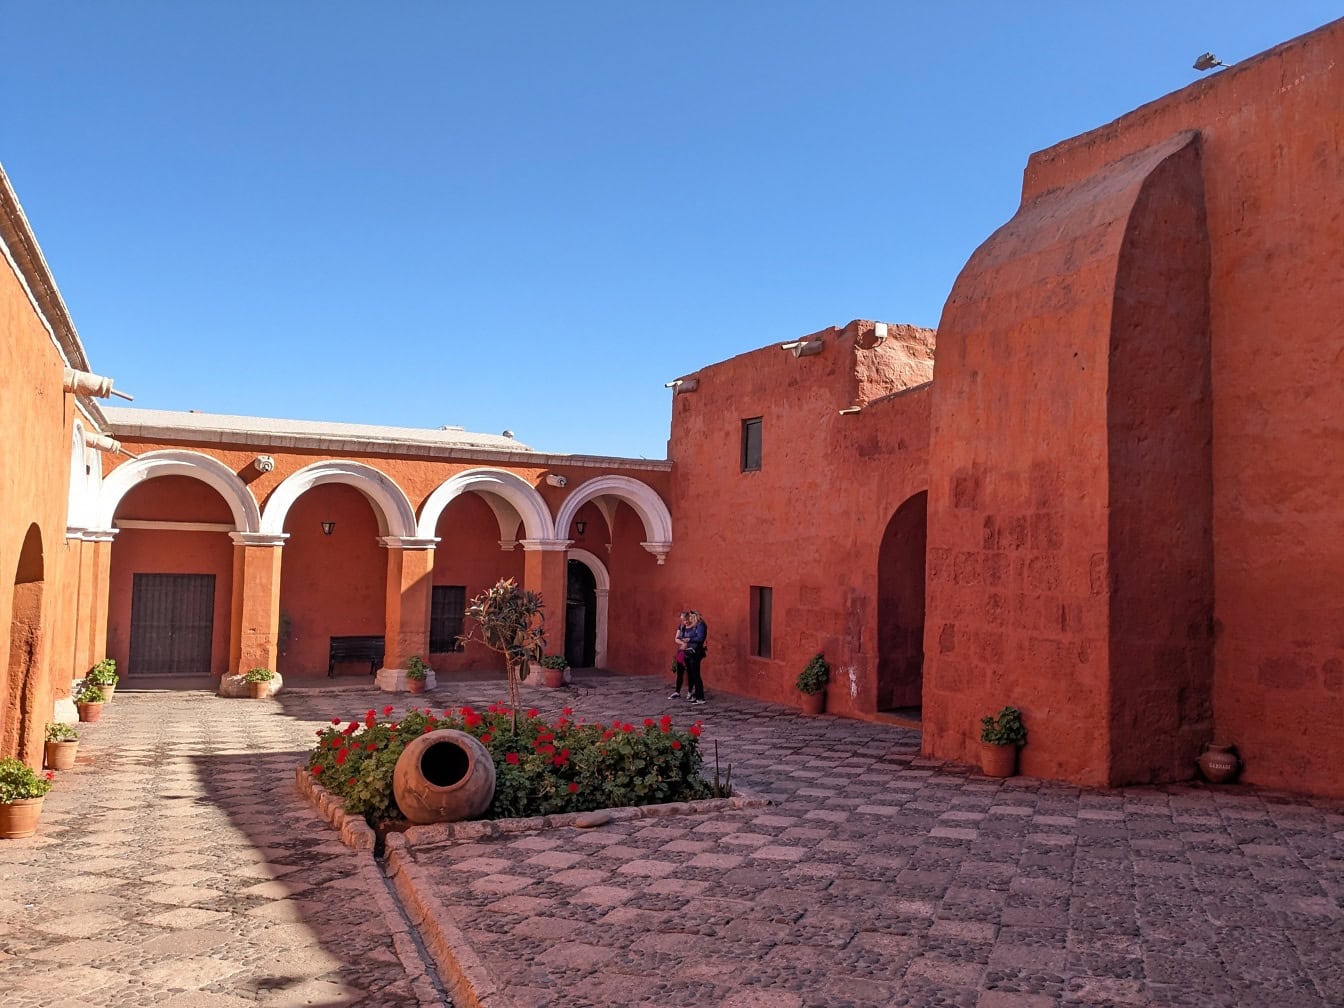 svetové dedičstvo UNESCO, nádvorie s oblúkmi v kláštore dominikánskeho druhého rádu Santa Catalina de Siena v Arequipe v Peru